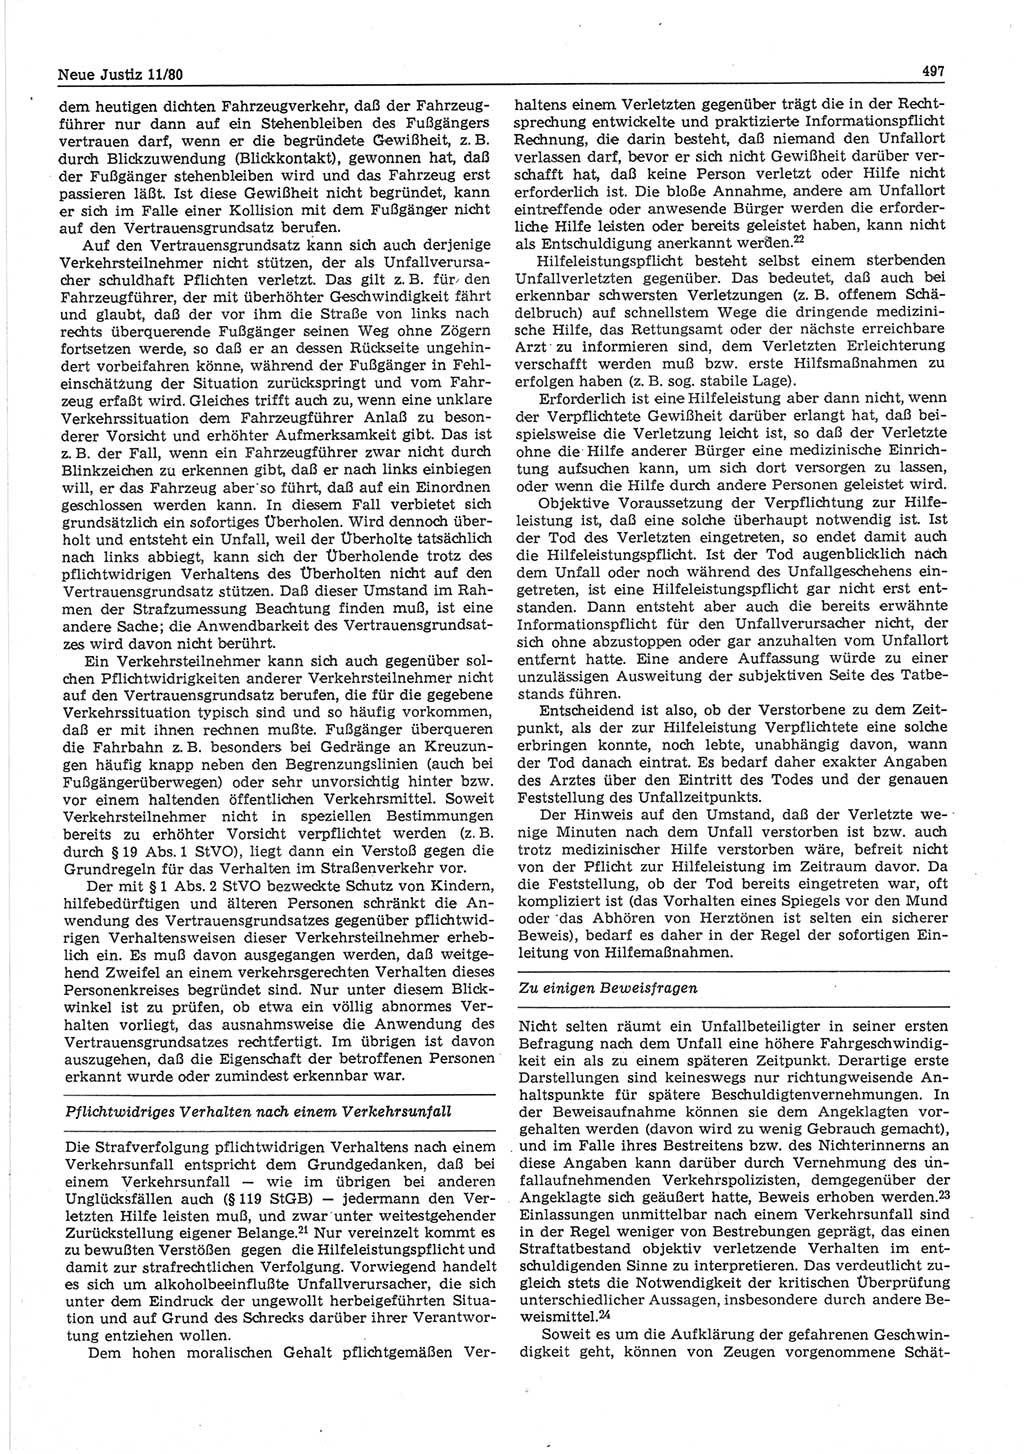 Neue Justiz (NJ), Zeitschrift für sozialistisches Recht und Gesetzlichkeit [Deutsche Demokratische Republik (DDR)], 34. Jahrgang 1980, Seite 497 (NJ DDR 1980, S. 497)